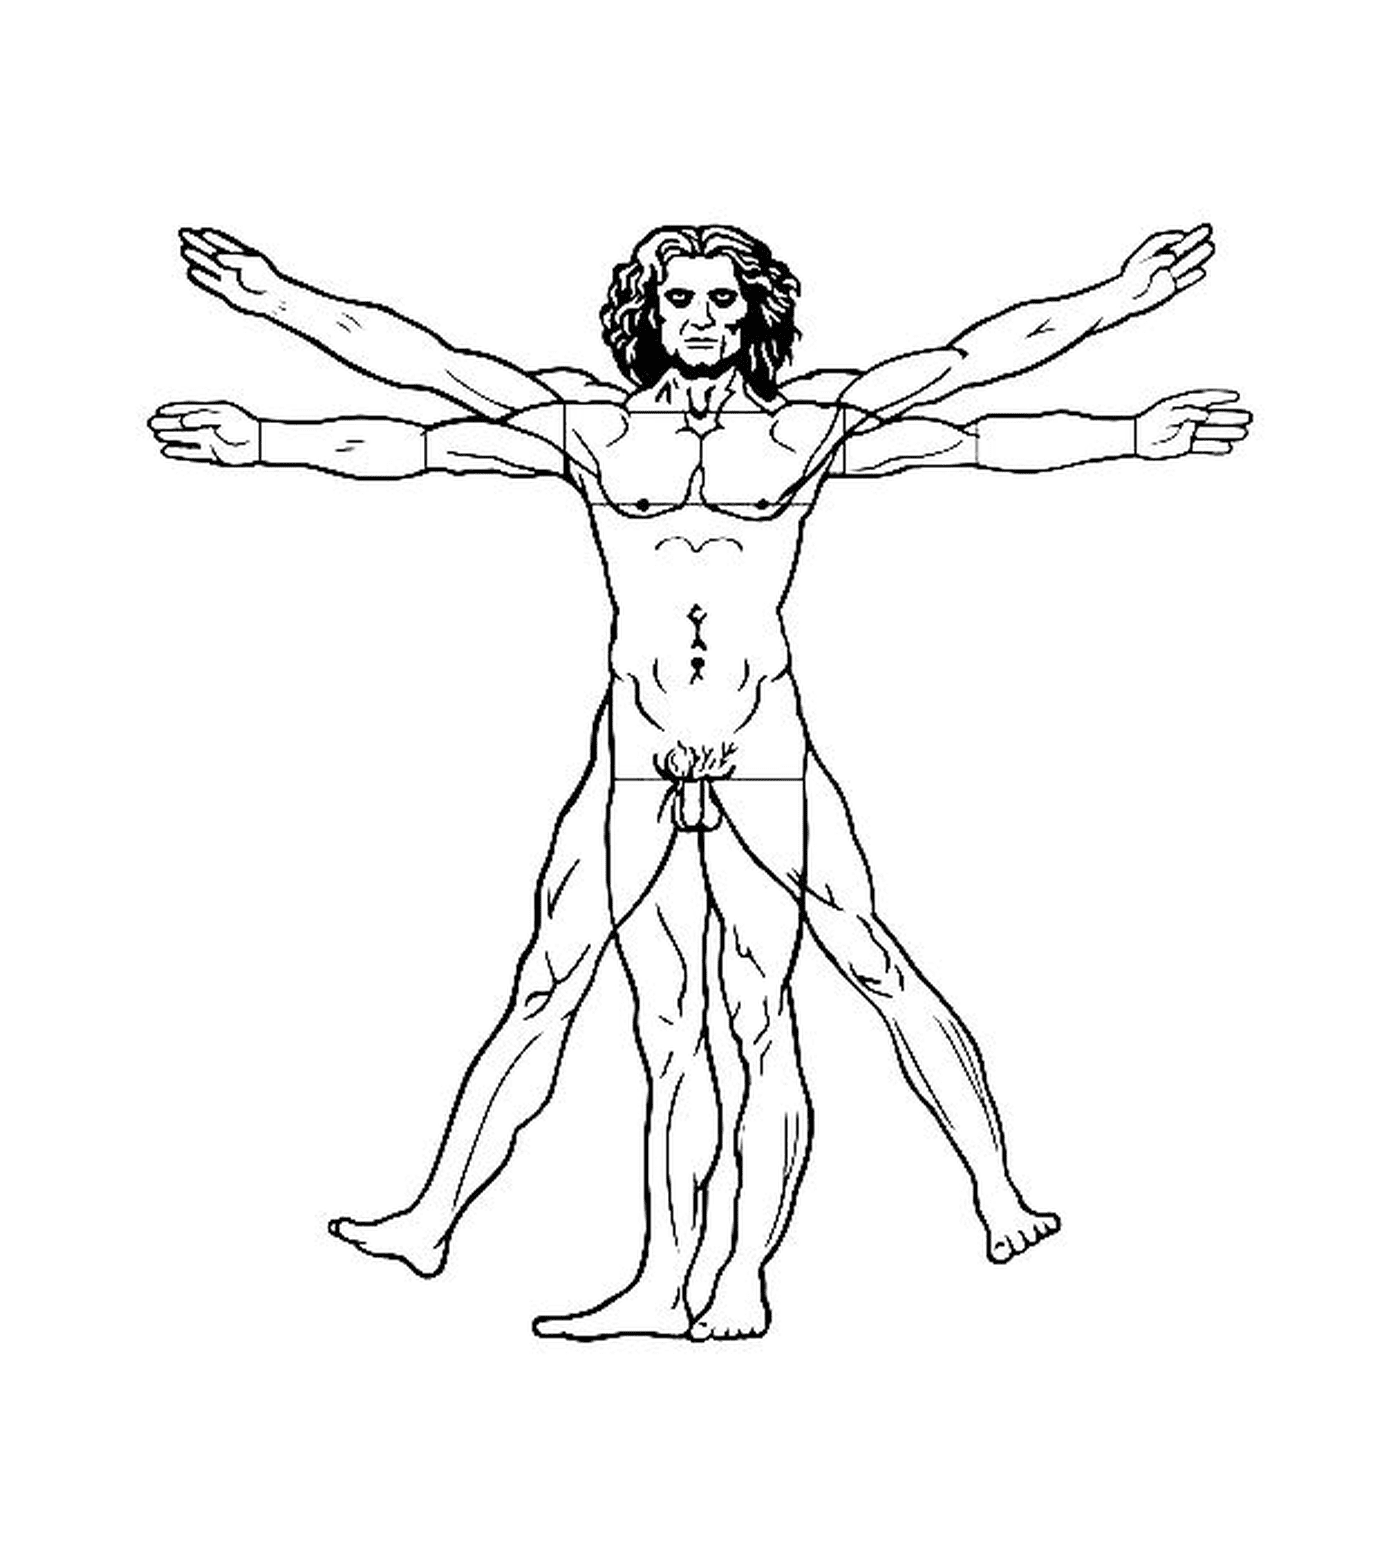   un homme avec les bras tendus selon l'Homme de Vitruve de Léonard de Vinci 